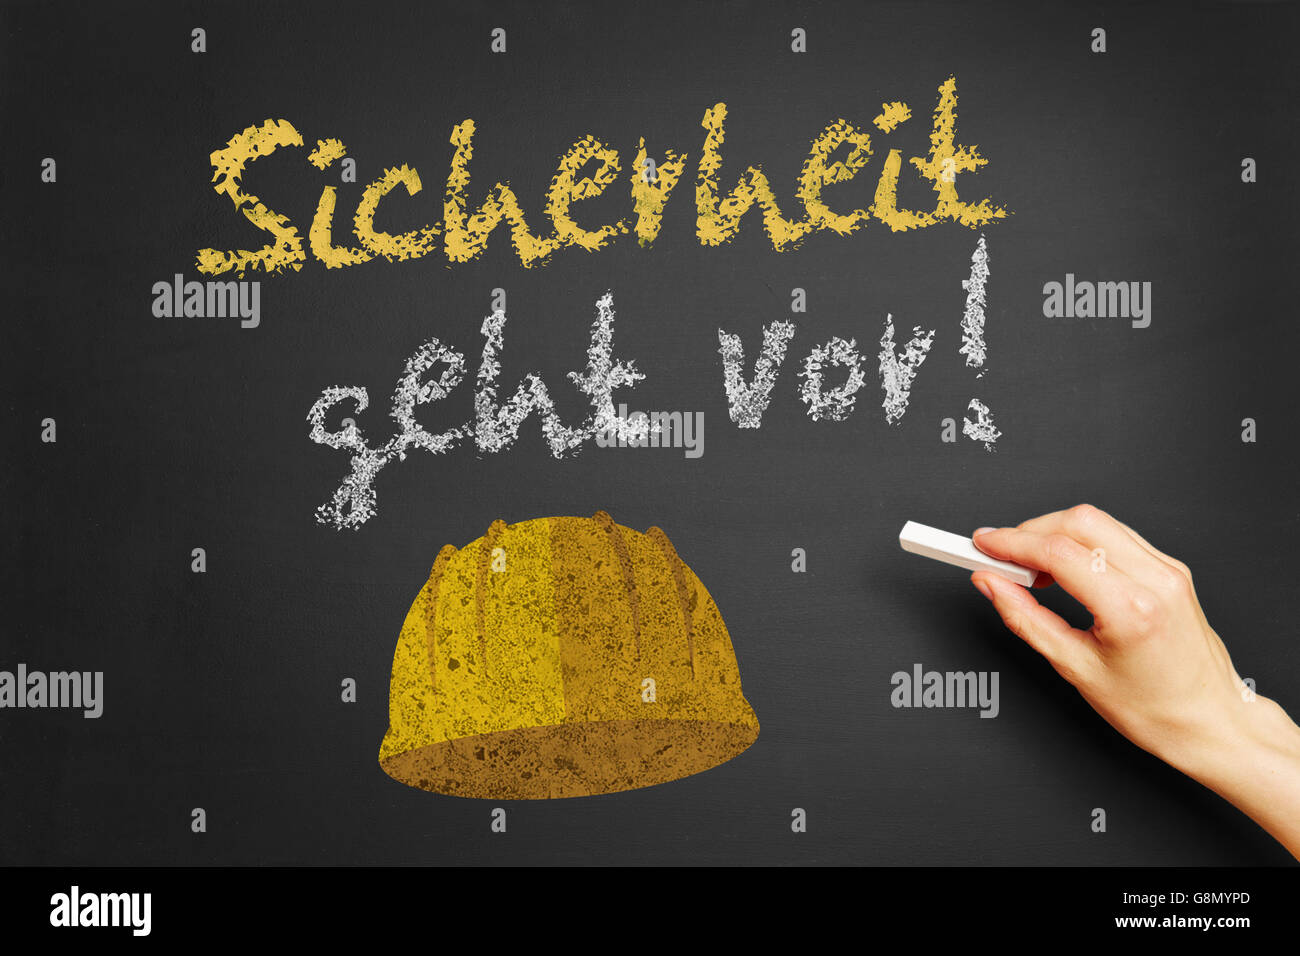 Handschrift den deutsche Slogan "Sicherheit Geht Vor!" (Sicherheit erste) auf einer Tafel Stockfoto